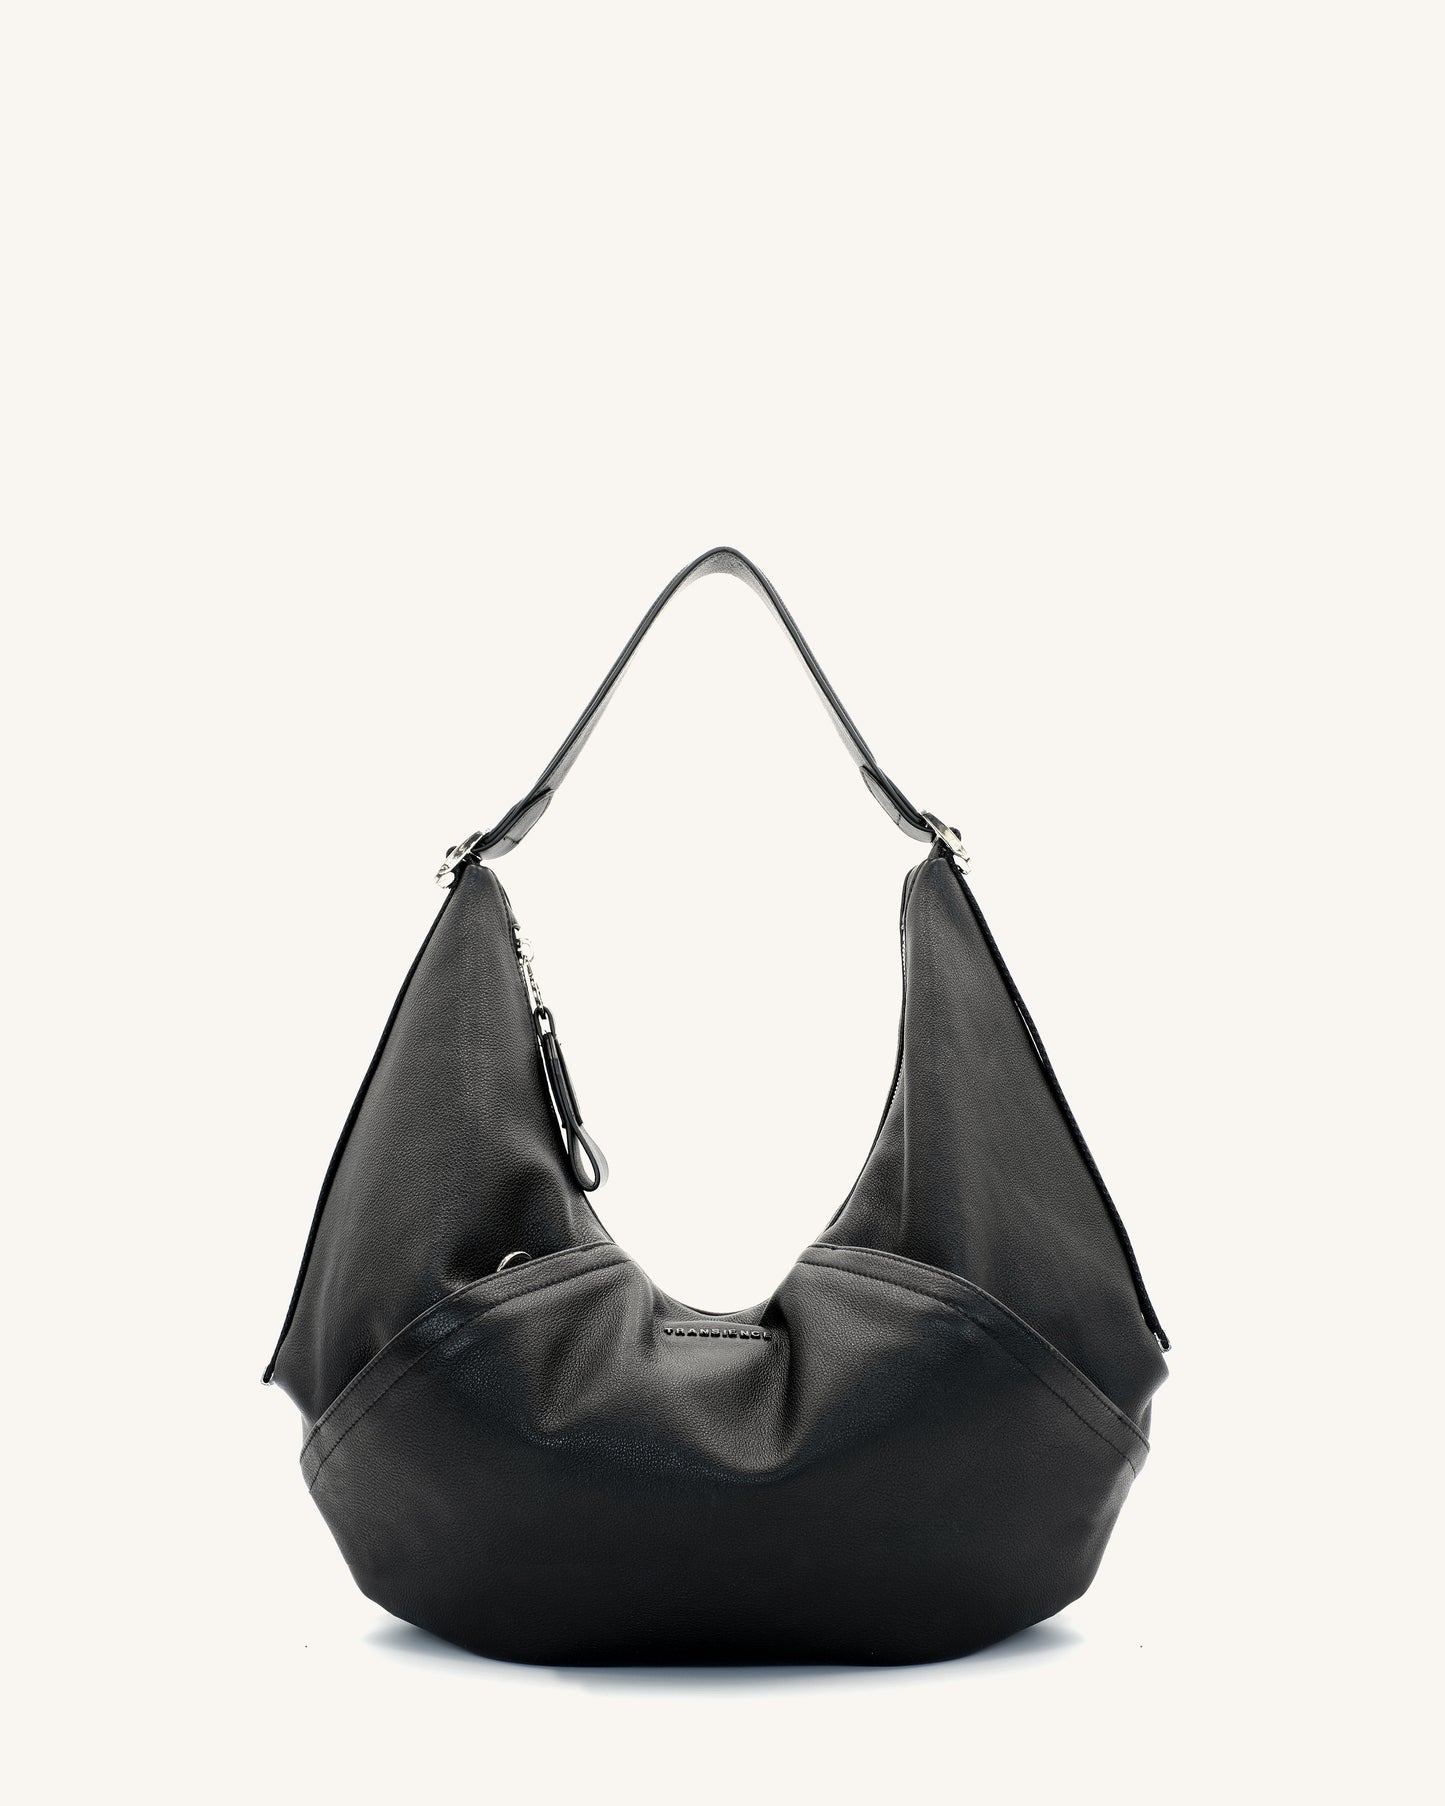 Hammock Bag - Black pebble leather